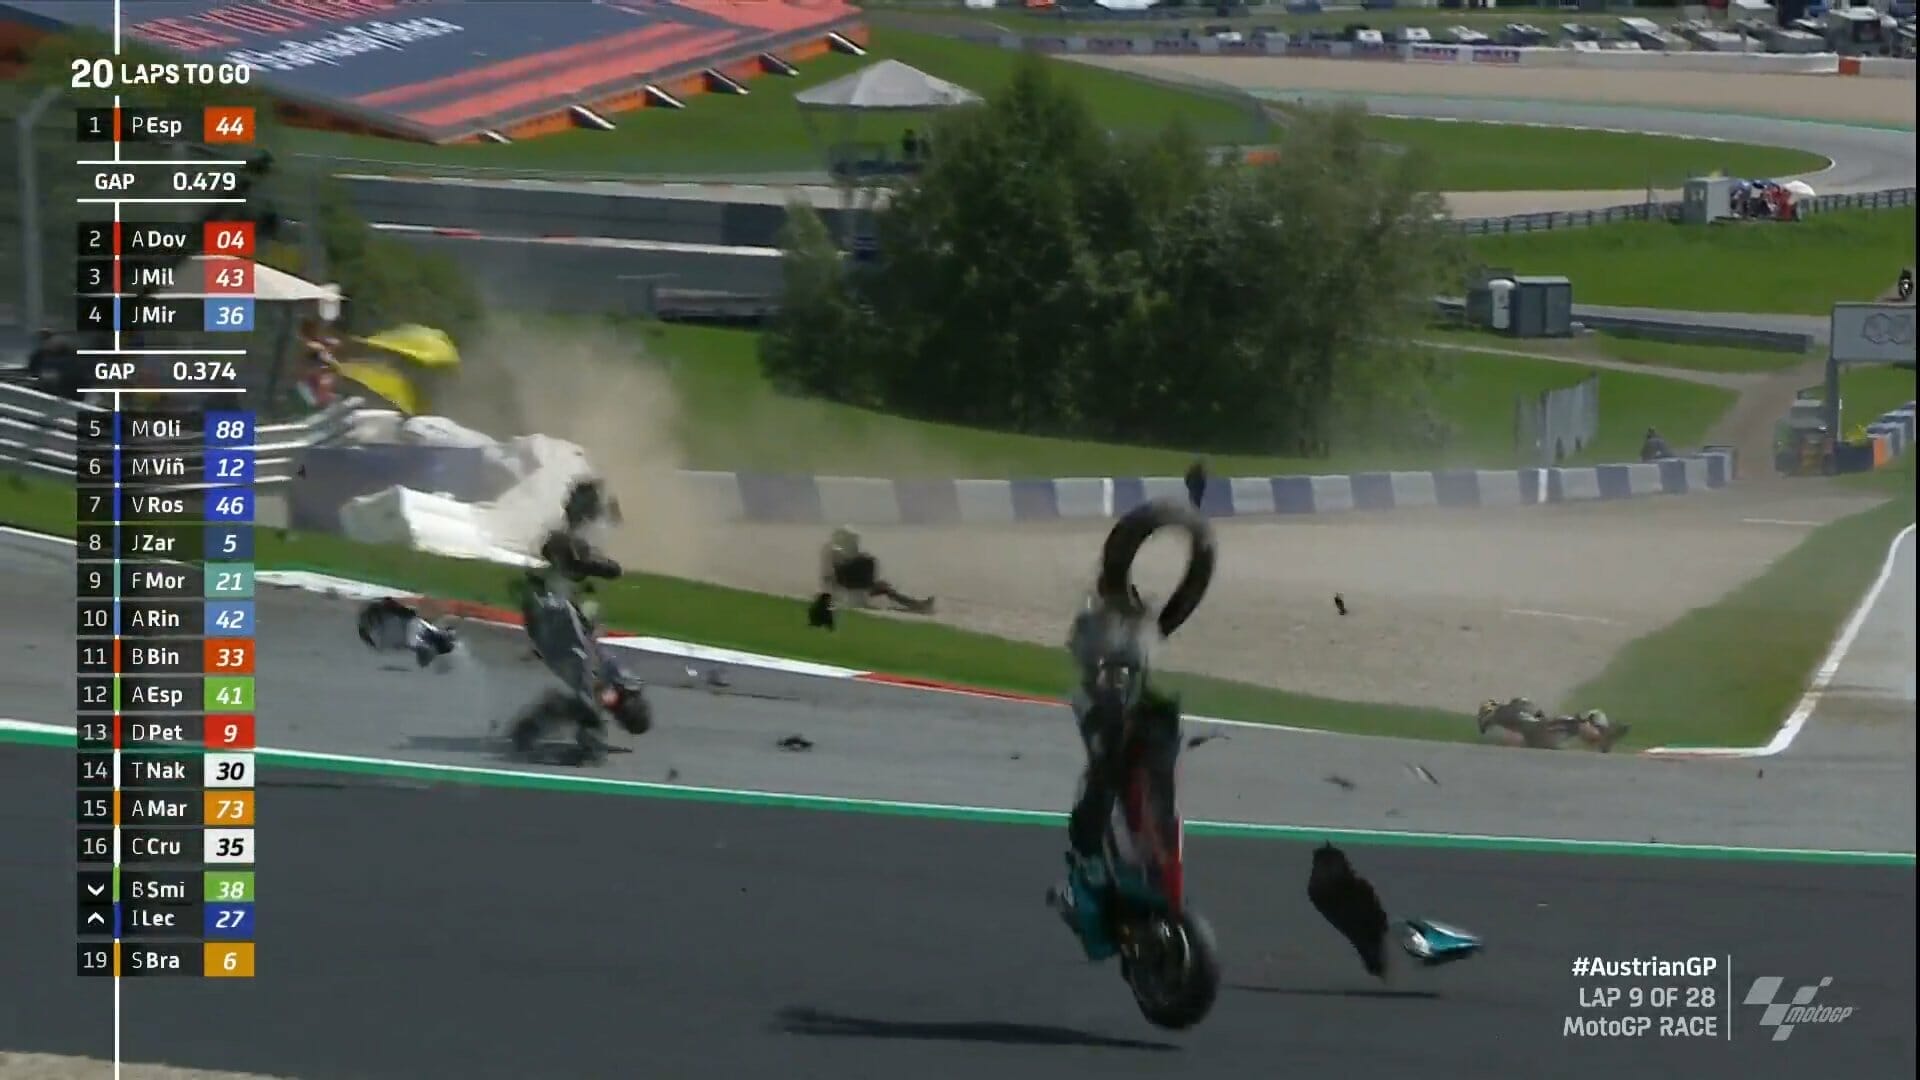 Auch Rennen der MotoGP mit roter Flagge abgebrochen. #AustrianGP
- auch in der MOTORRAD NACHRICHTEN APP